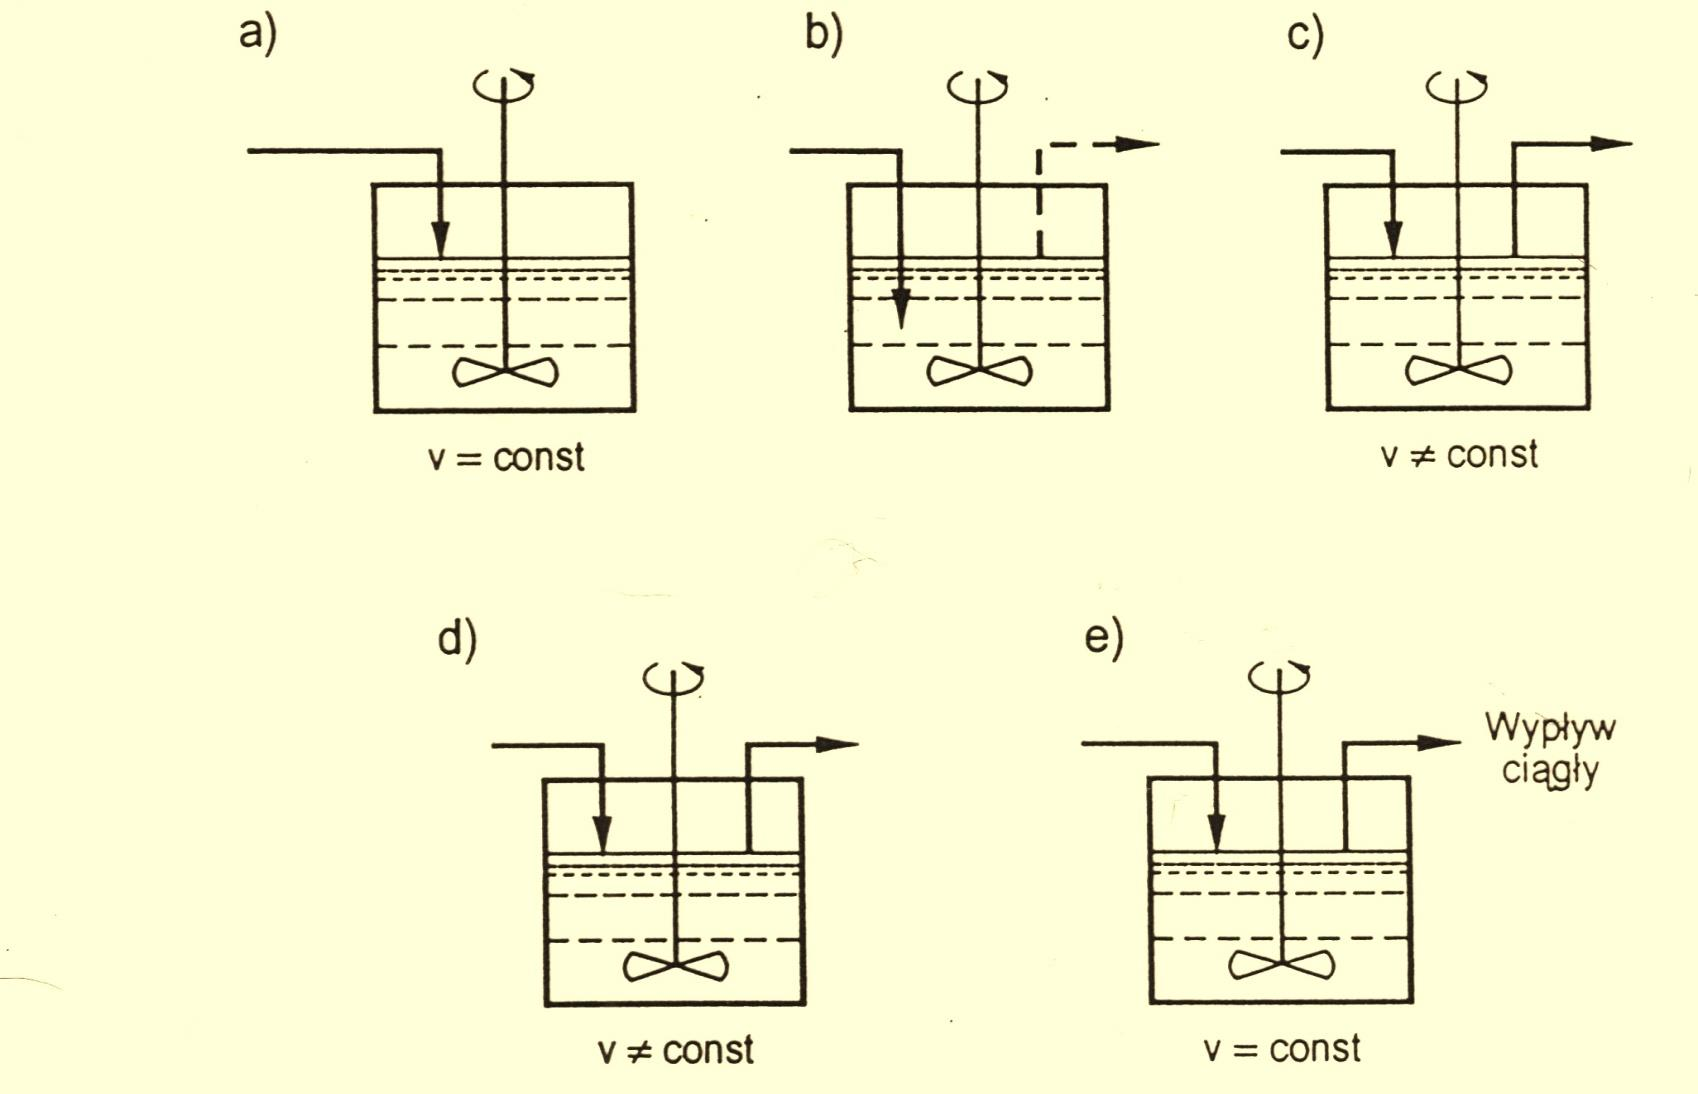 a) bioreaktor pracujący okresowo, b) bioreaktor pracujący okresowo z okresowym zasilaniem c) bioreaktor pracujący okresowo z okresowo powtarzalnym zasilaniem d) układ do